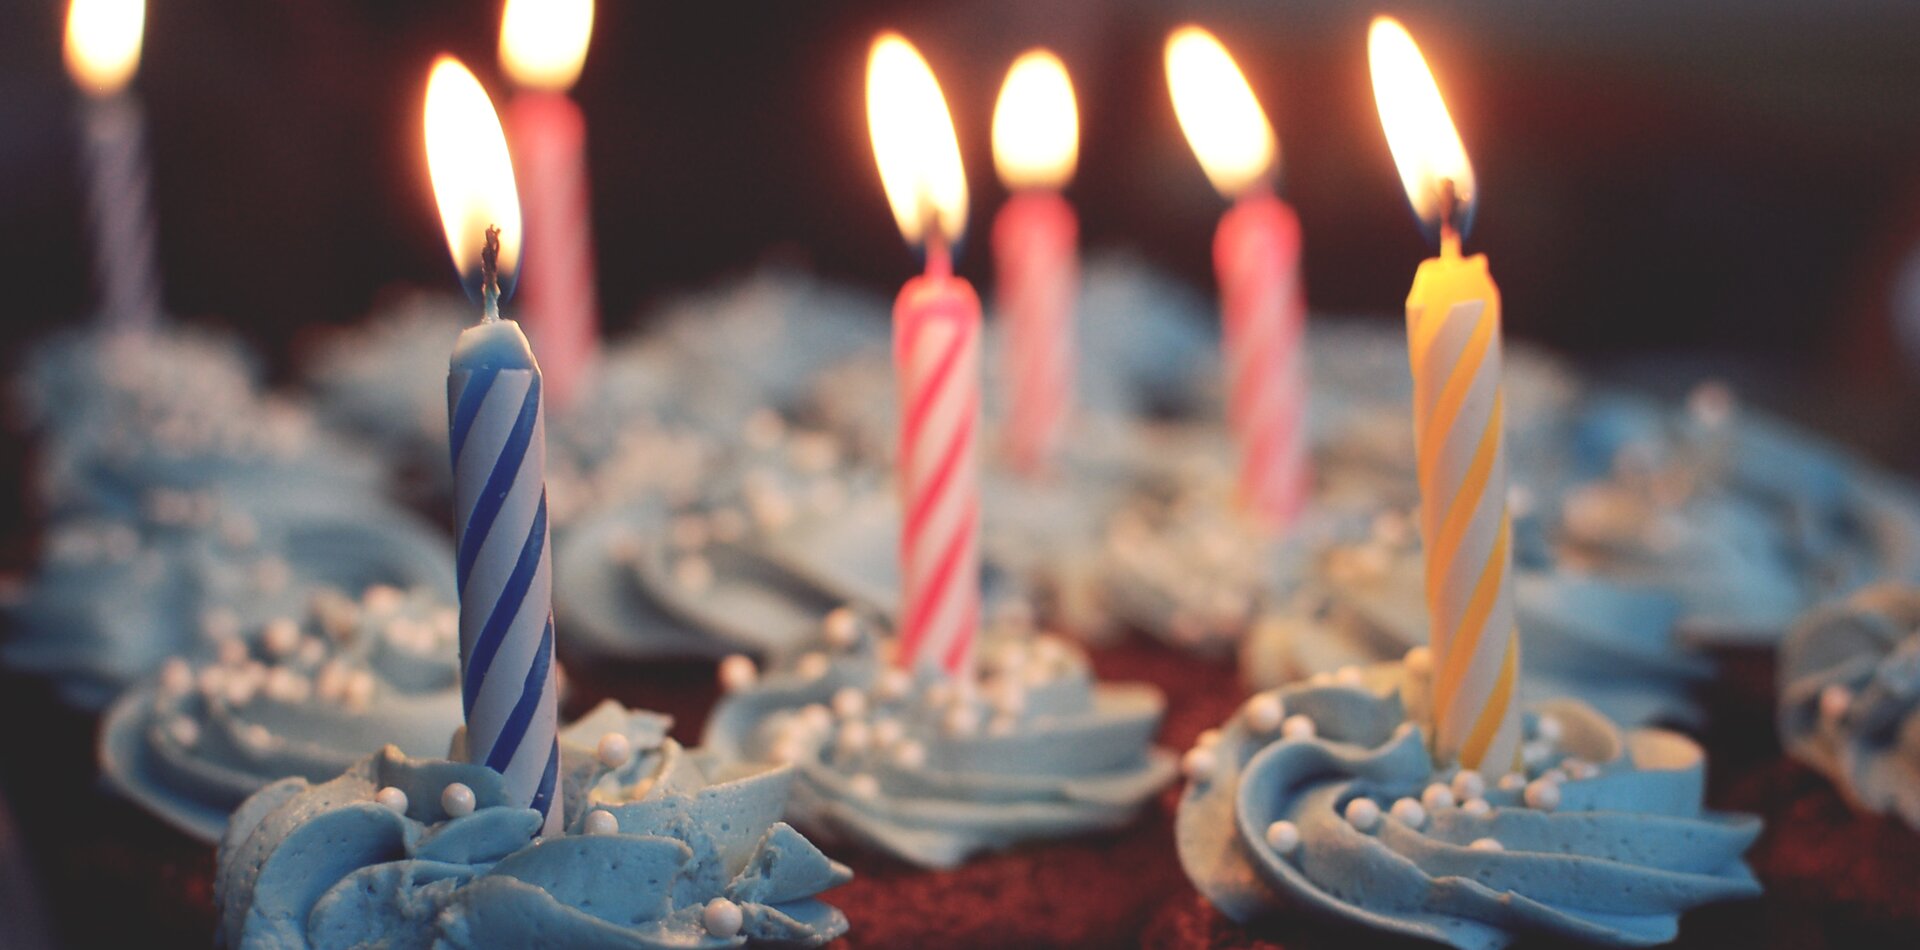 Na przyjęciu nie może zabraknąć urodzinowych świeczek… Na przyjęciu nie może zabraknąć urodzinowych świeczek… Źródło: domena publiczna.